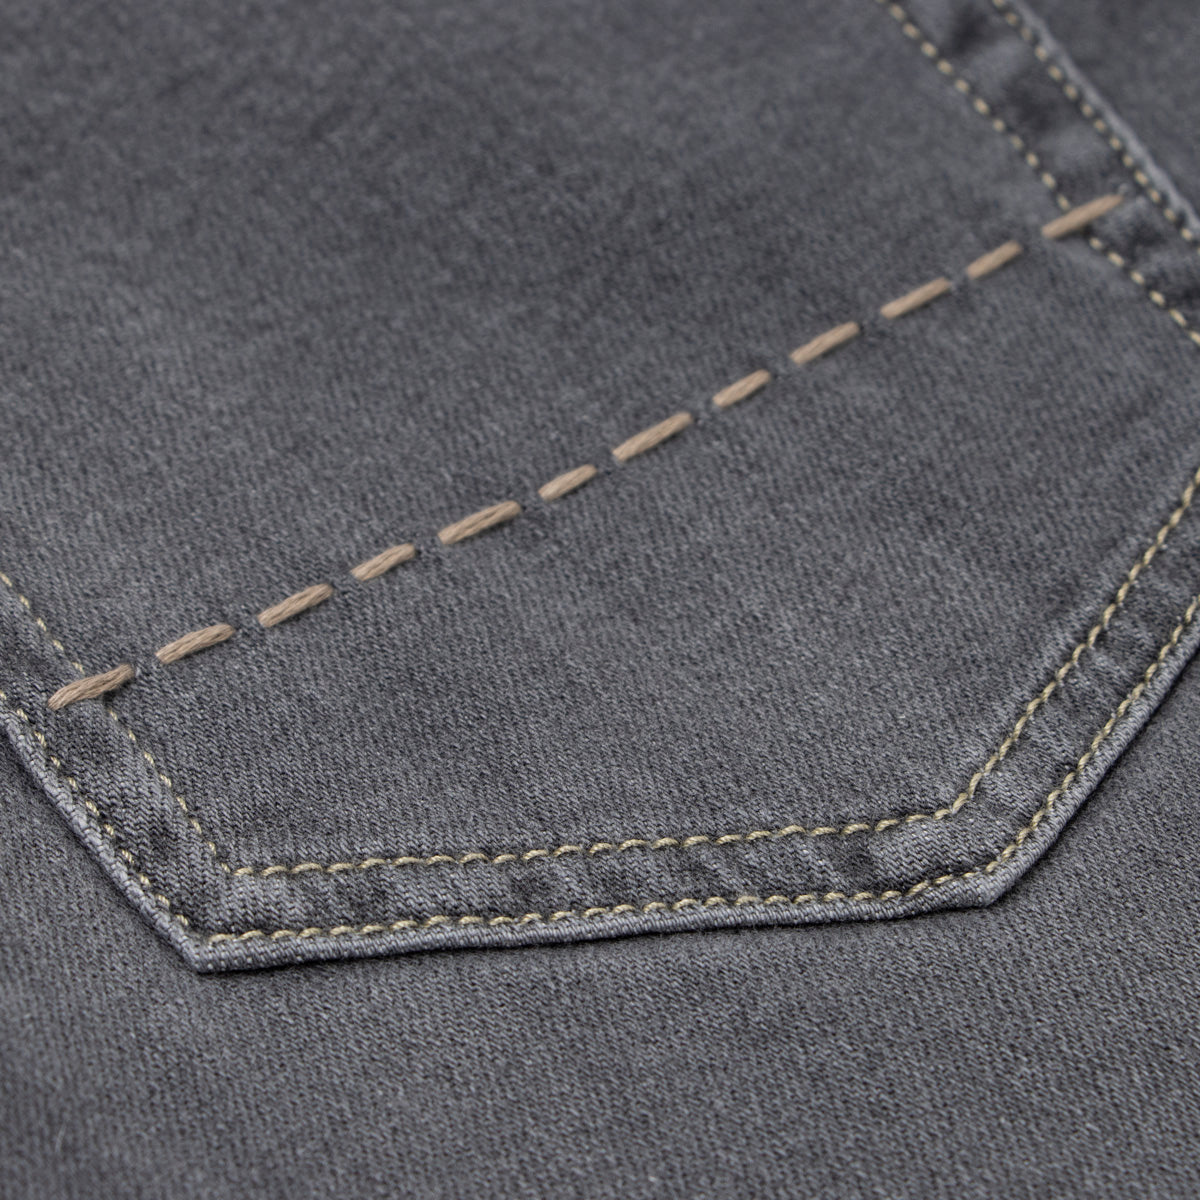 Washed Grey Cashmere Denim 'Milano' Regular Fit Jeans  Richard J. Brown   